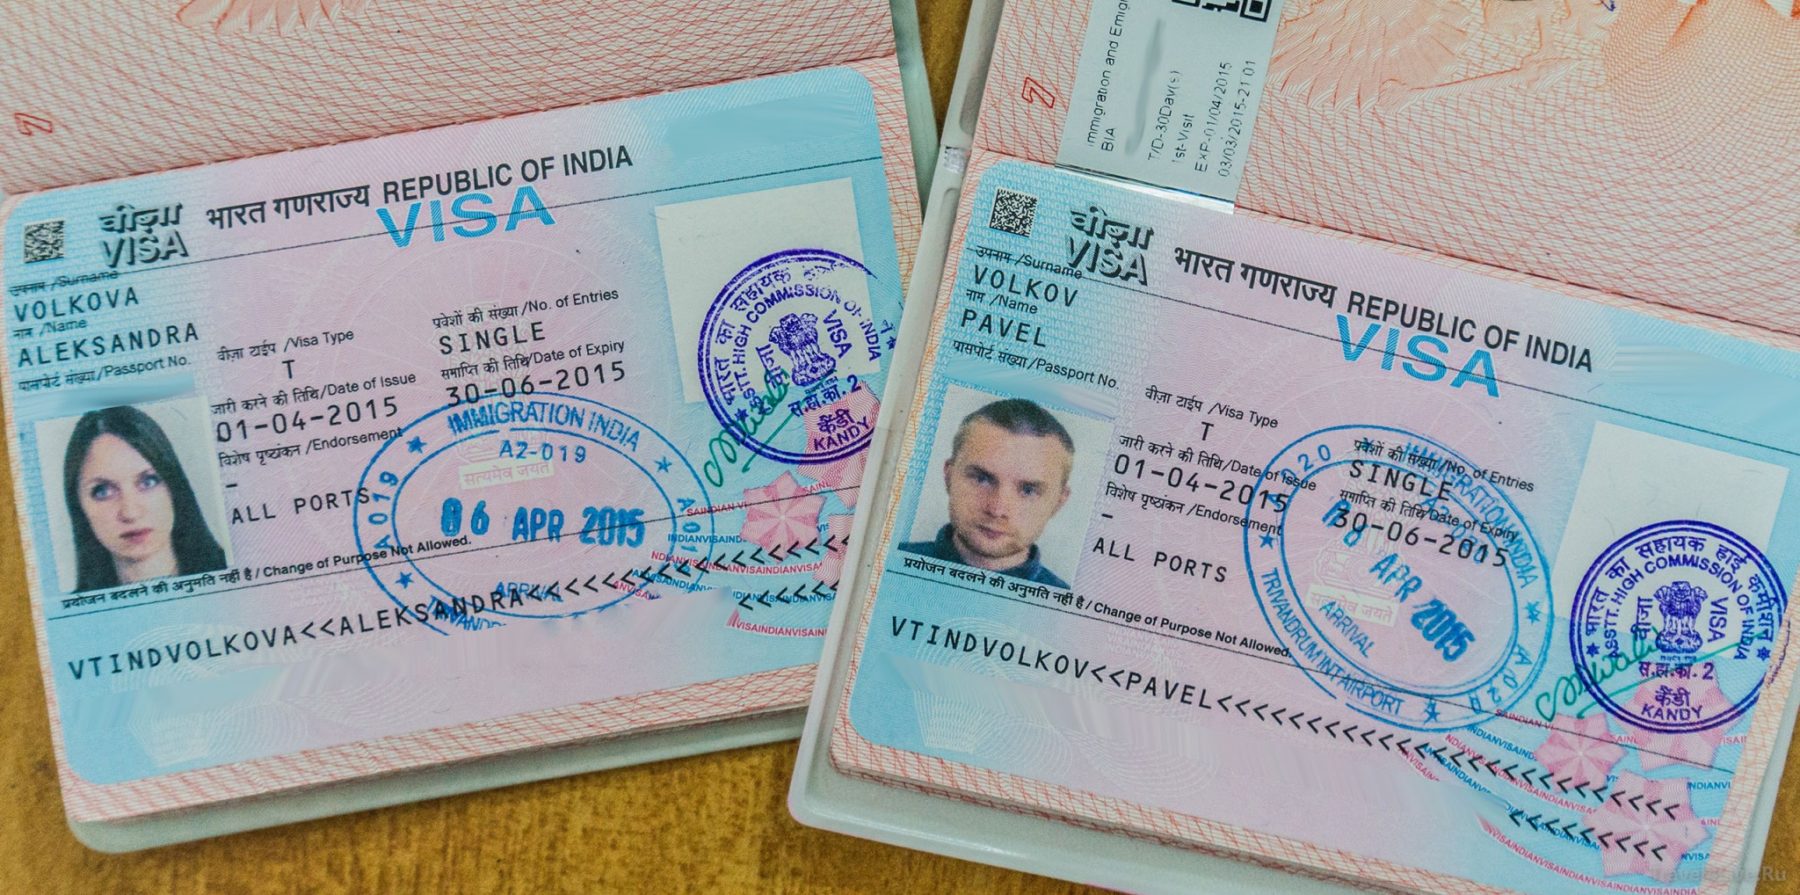 Виза в индию для россиян нужна при любых целях въезда, но получить ее не сложно